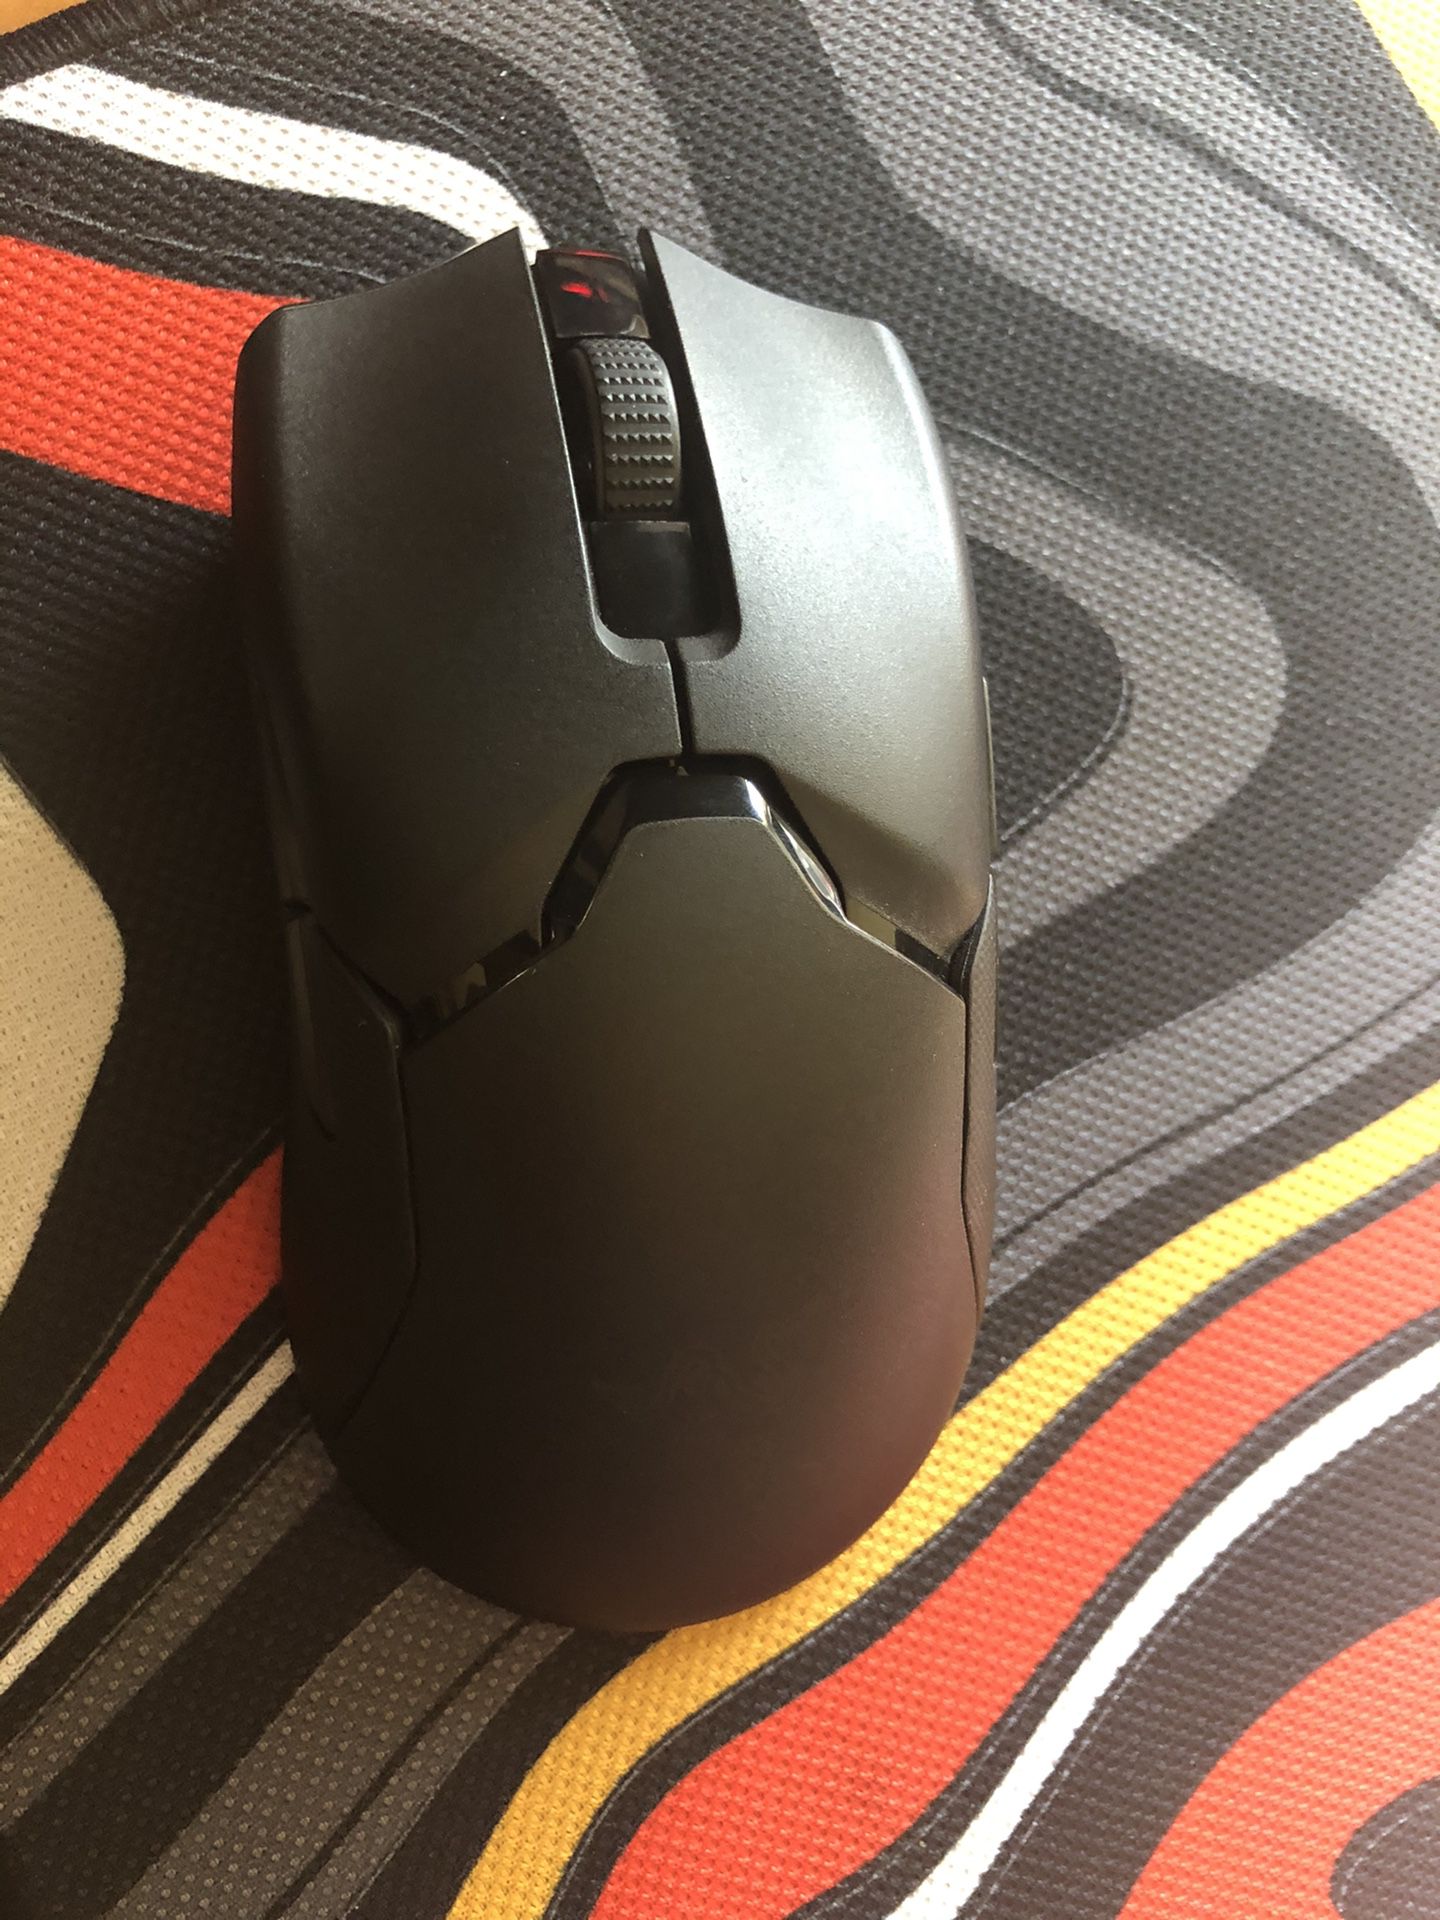 Razer Viper Ultimate Wireless Mouse